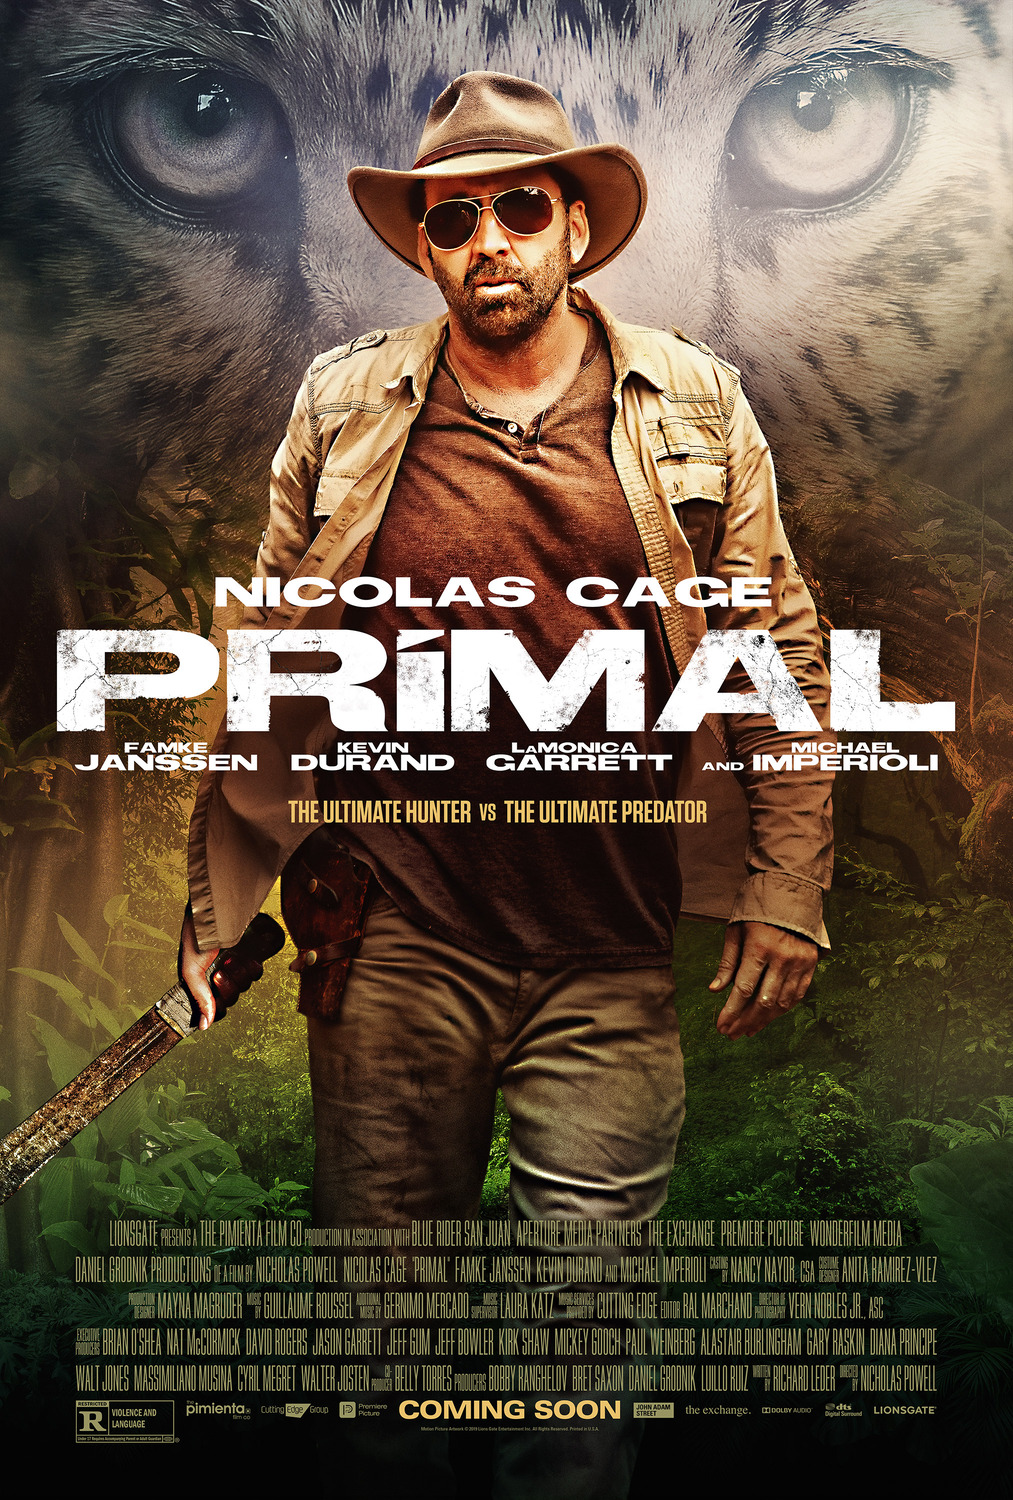 دانلود فیلم Primal 2019